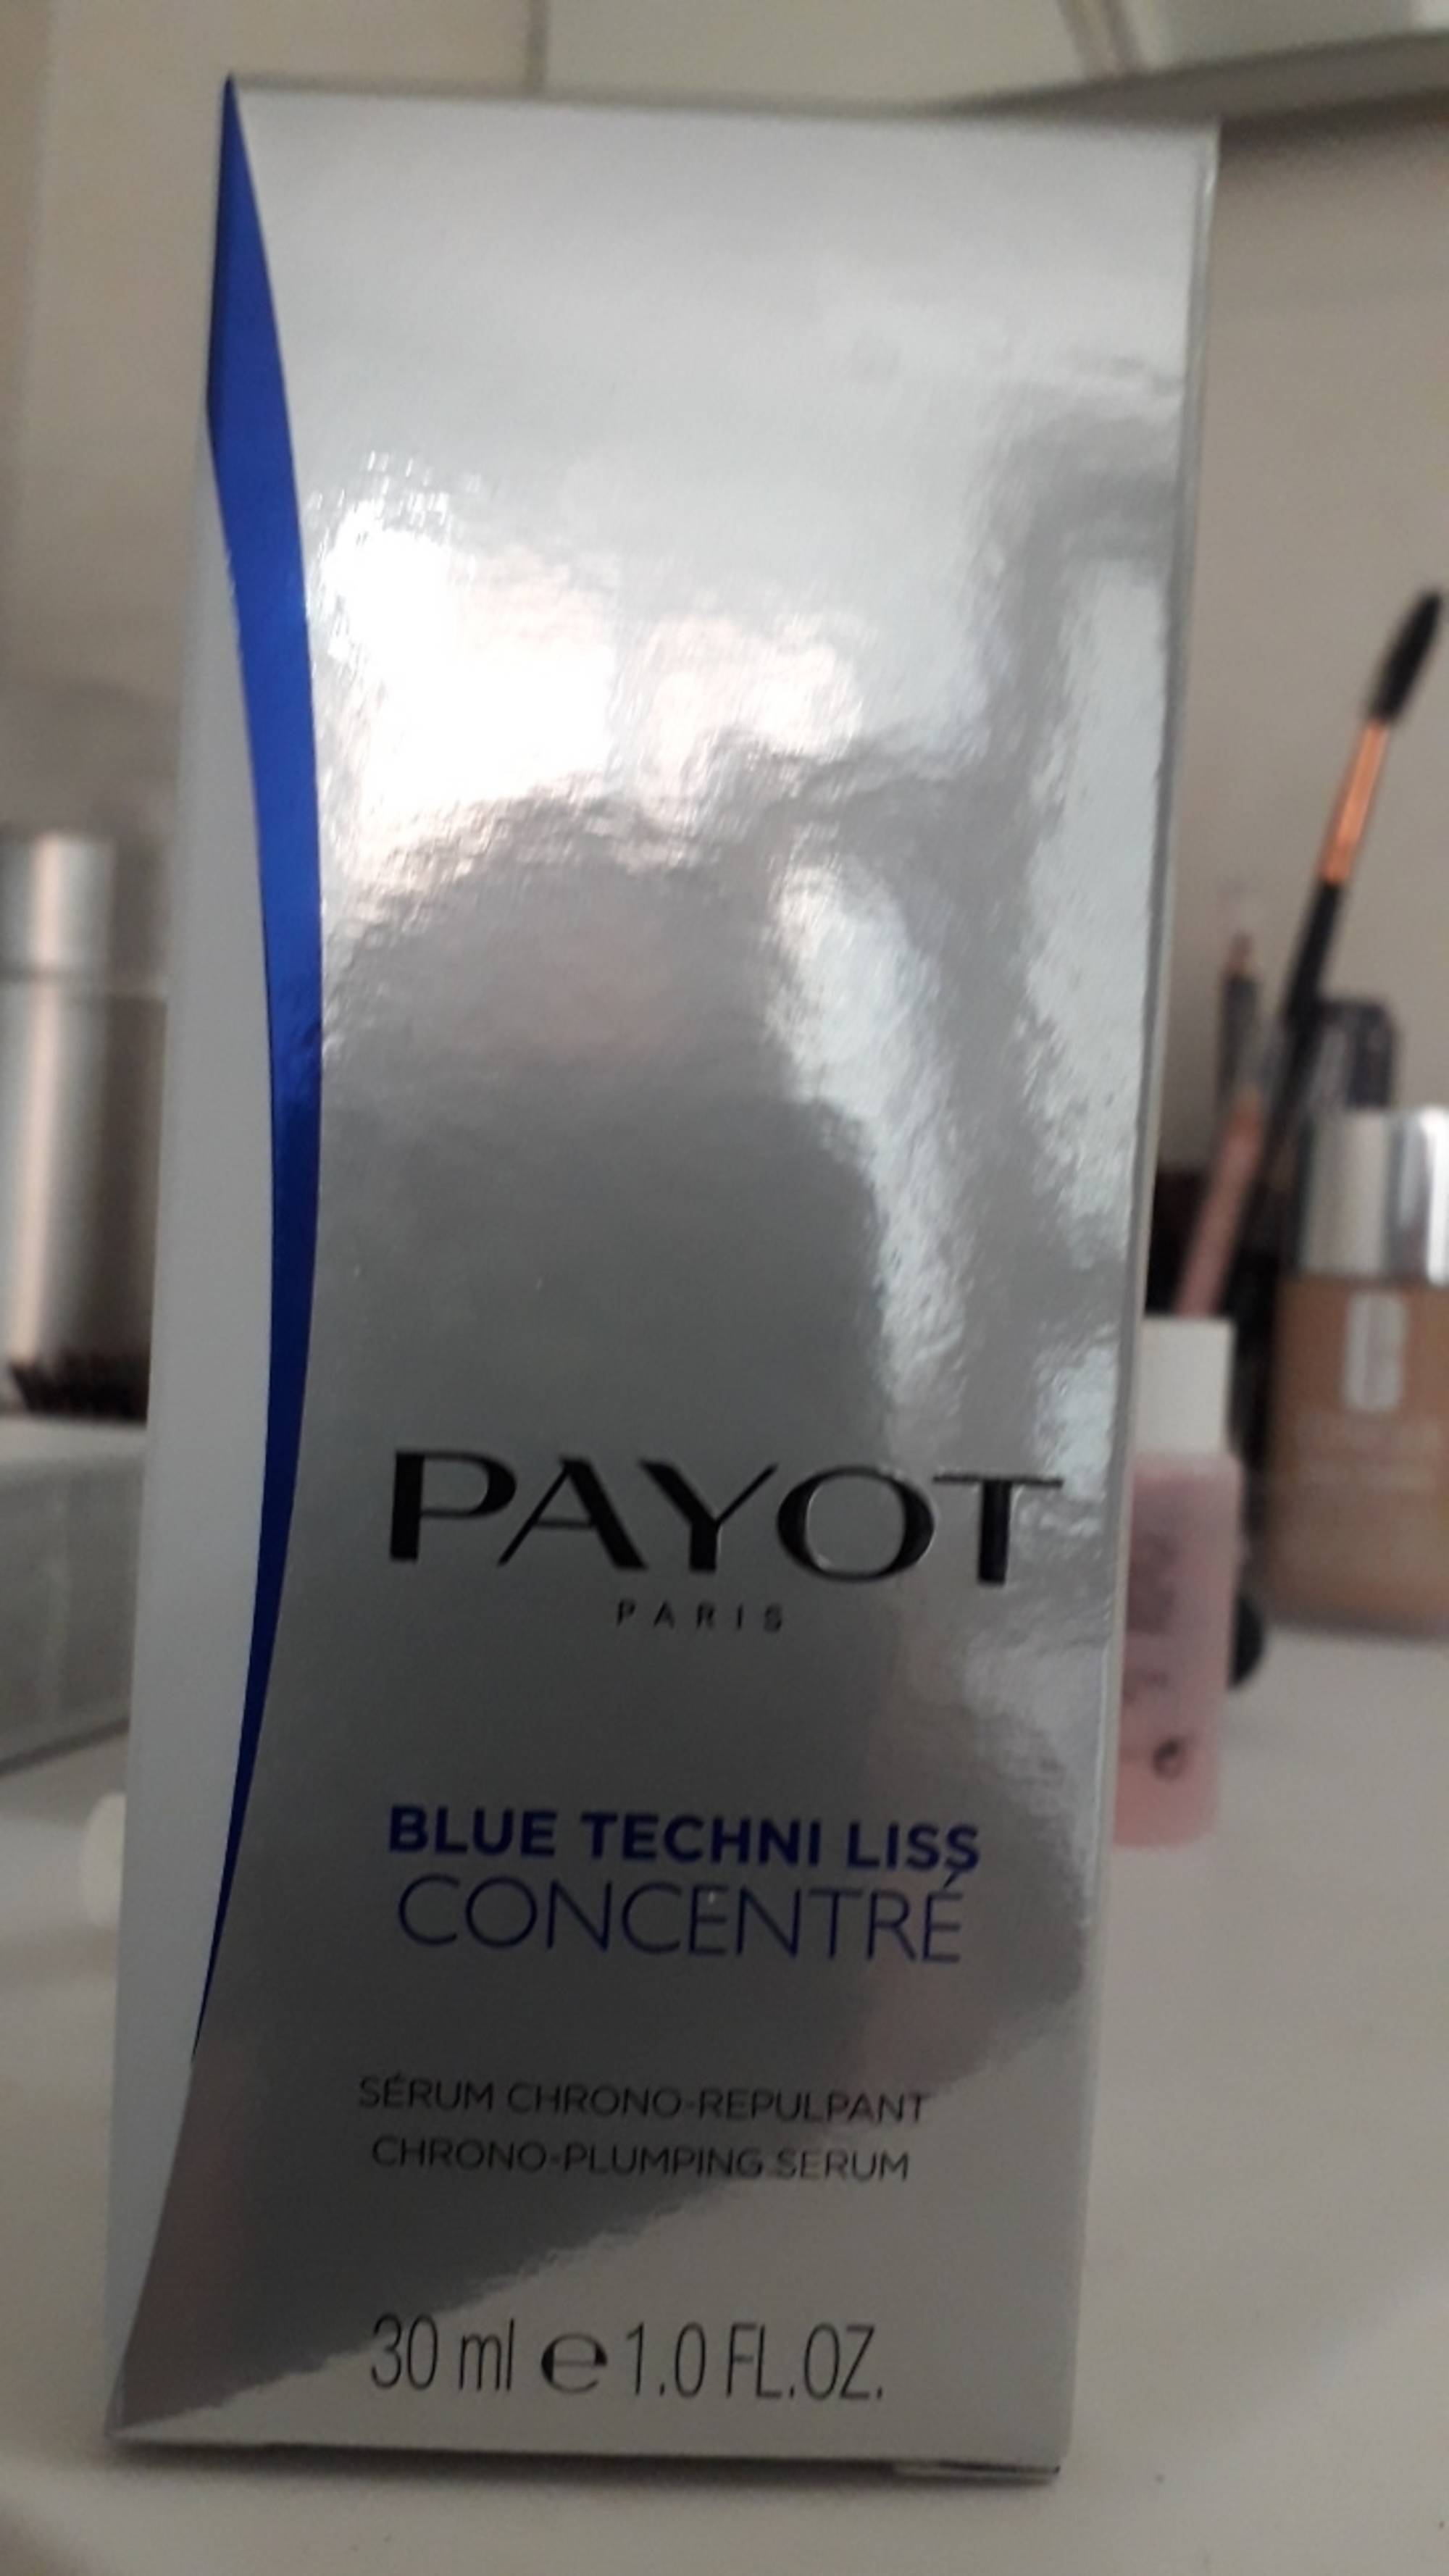 PAYOT - Blue techni liss concentré - Sérum chrono-repulpant